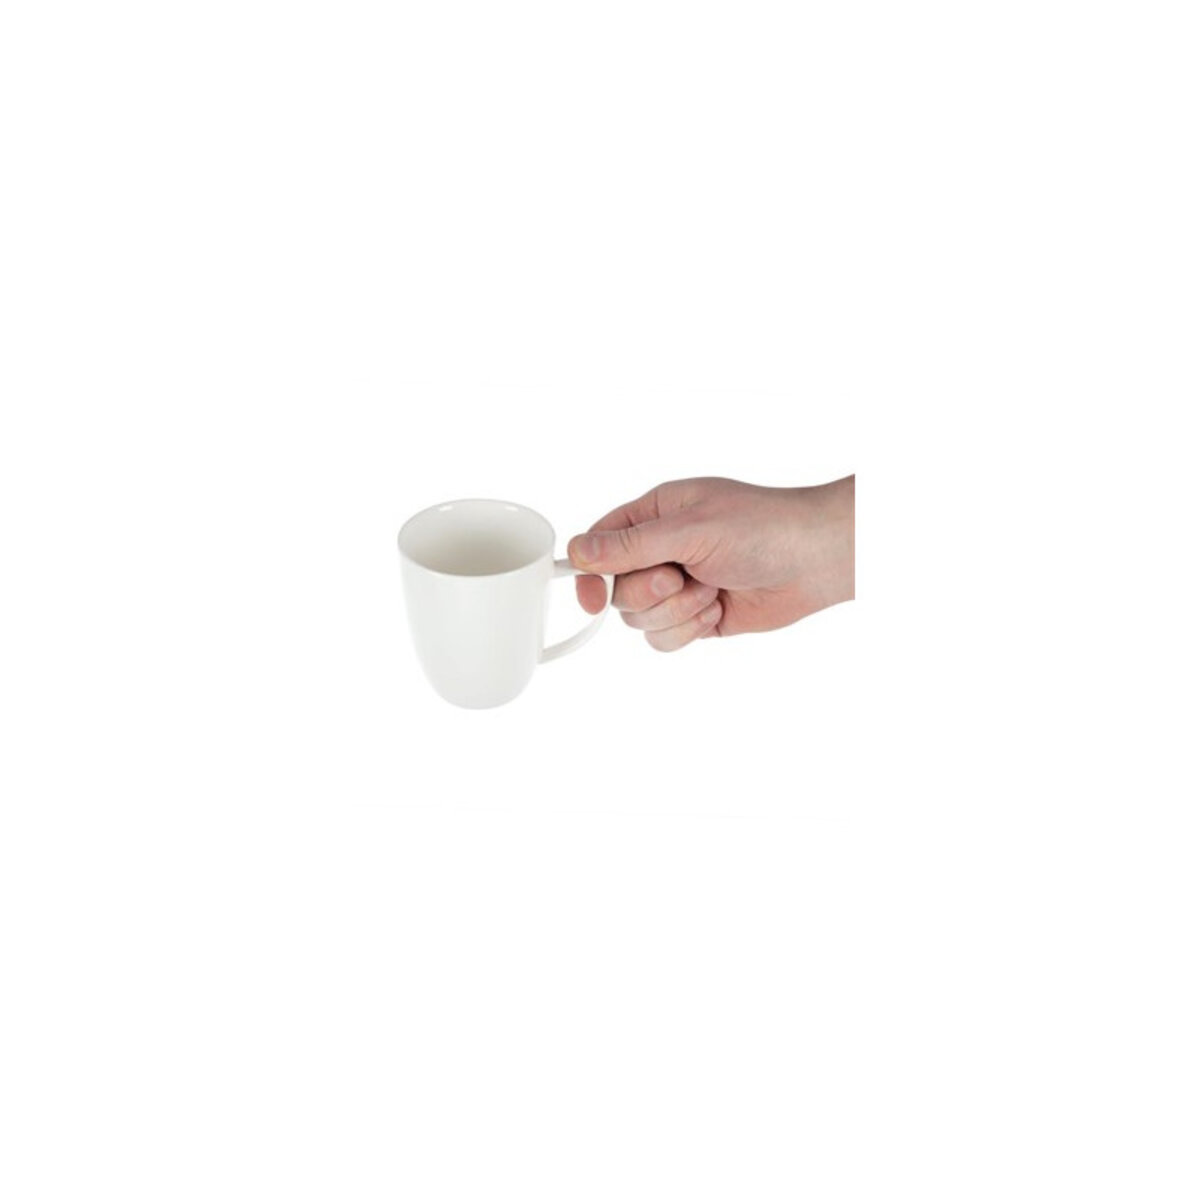 Tasses à Café Latte en Porcelaine Fine 350ml - Lot de 6 - Lumina Pas Cher